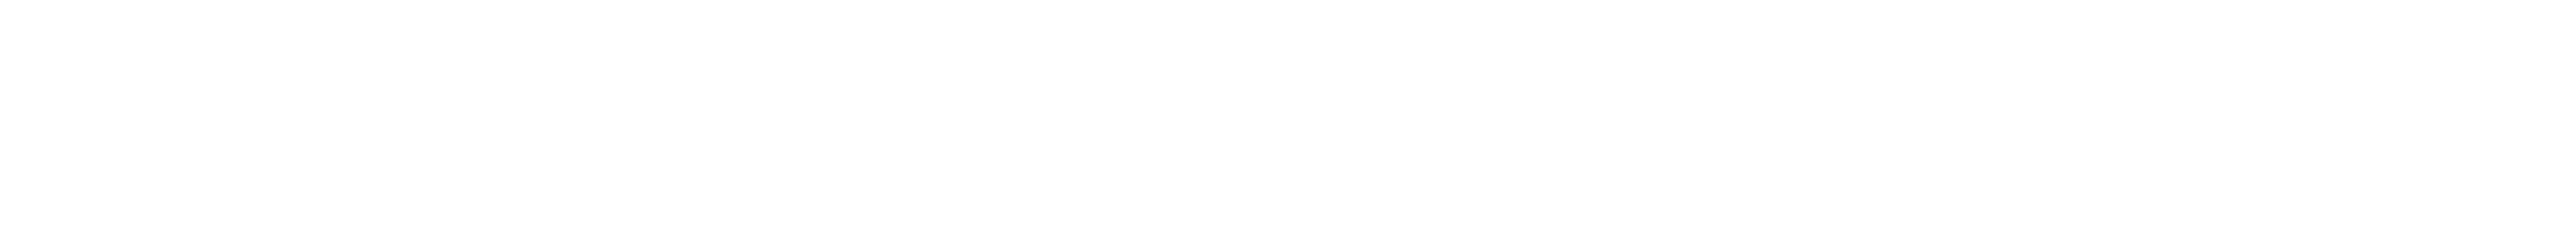 草場妙子さんがOSAJIとつくったヘアケアシリーズとボディゲル「kokyu」の新スタイリング剤 kokyu ヘアモイストスムーザー